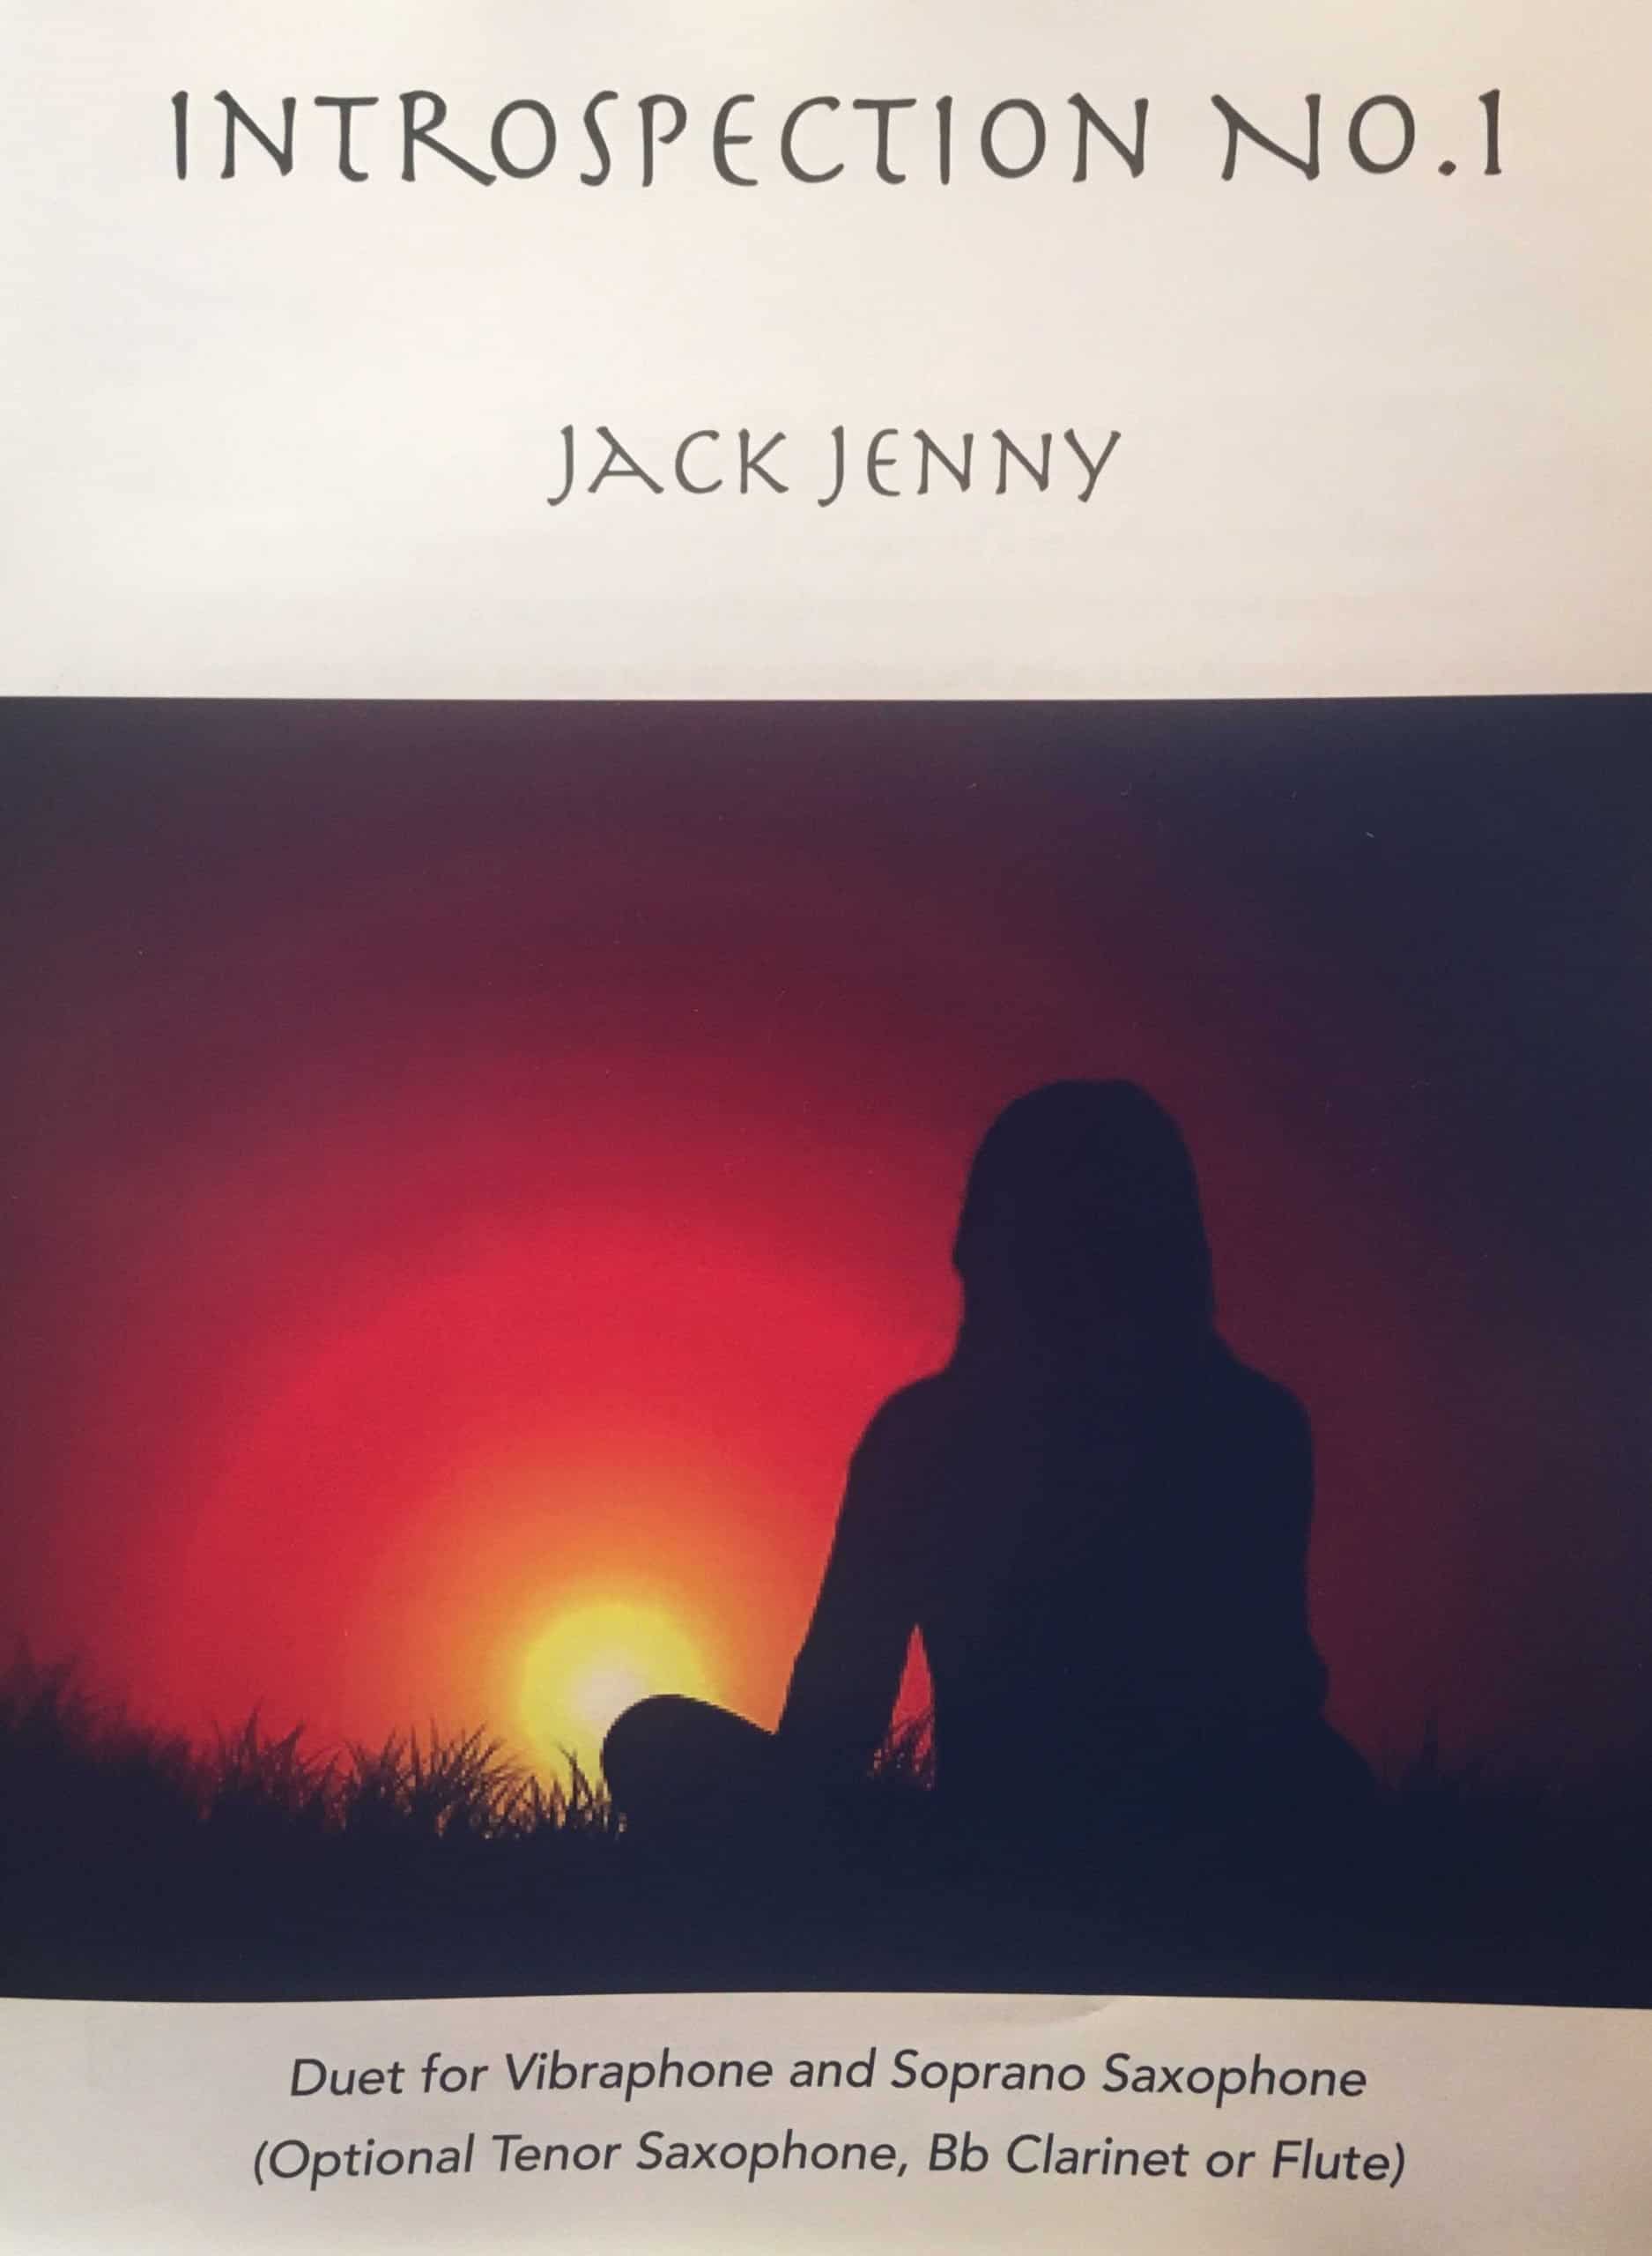 Introspection No.1 by Jack Jenny